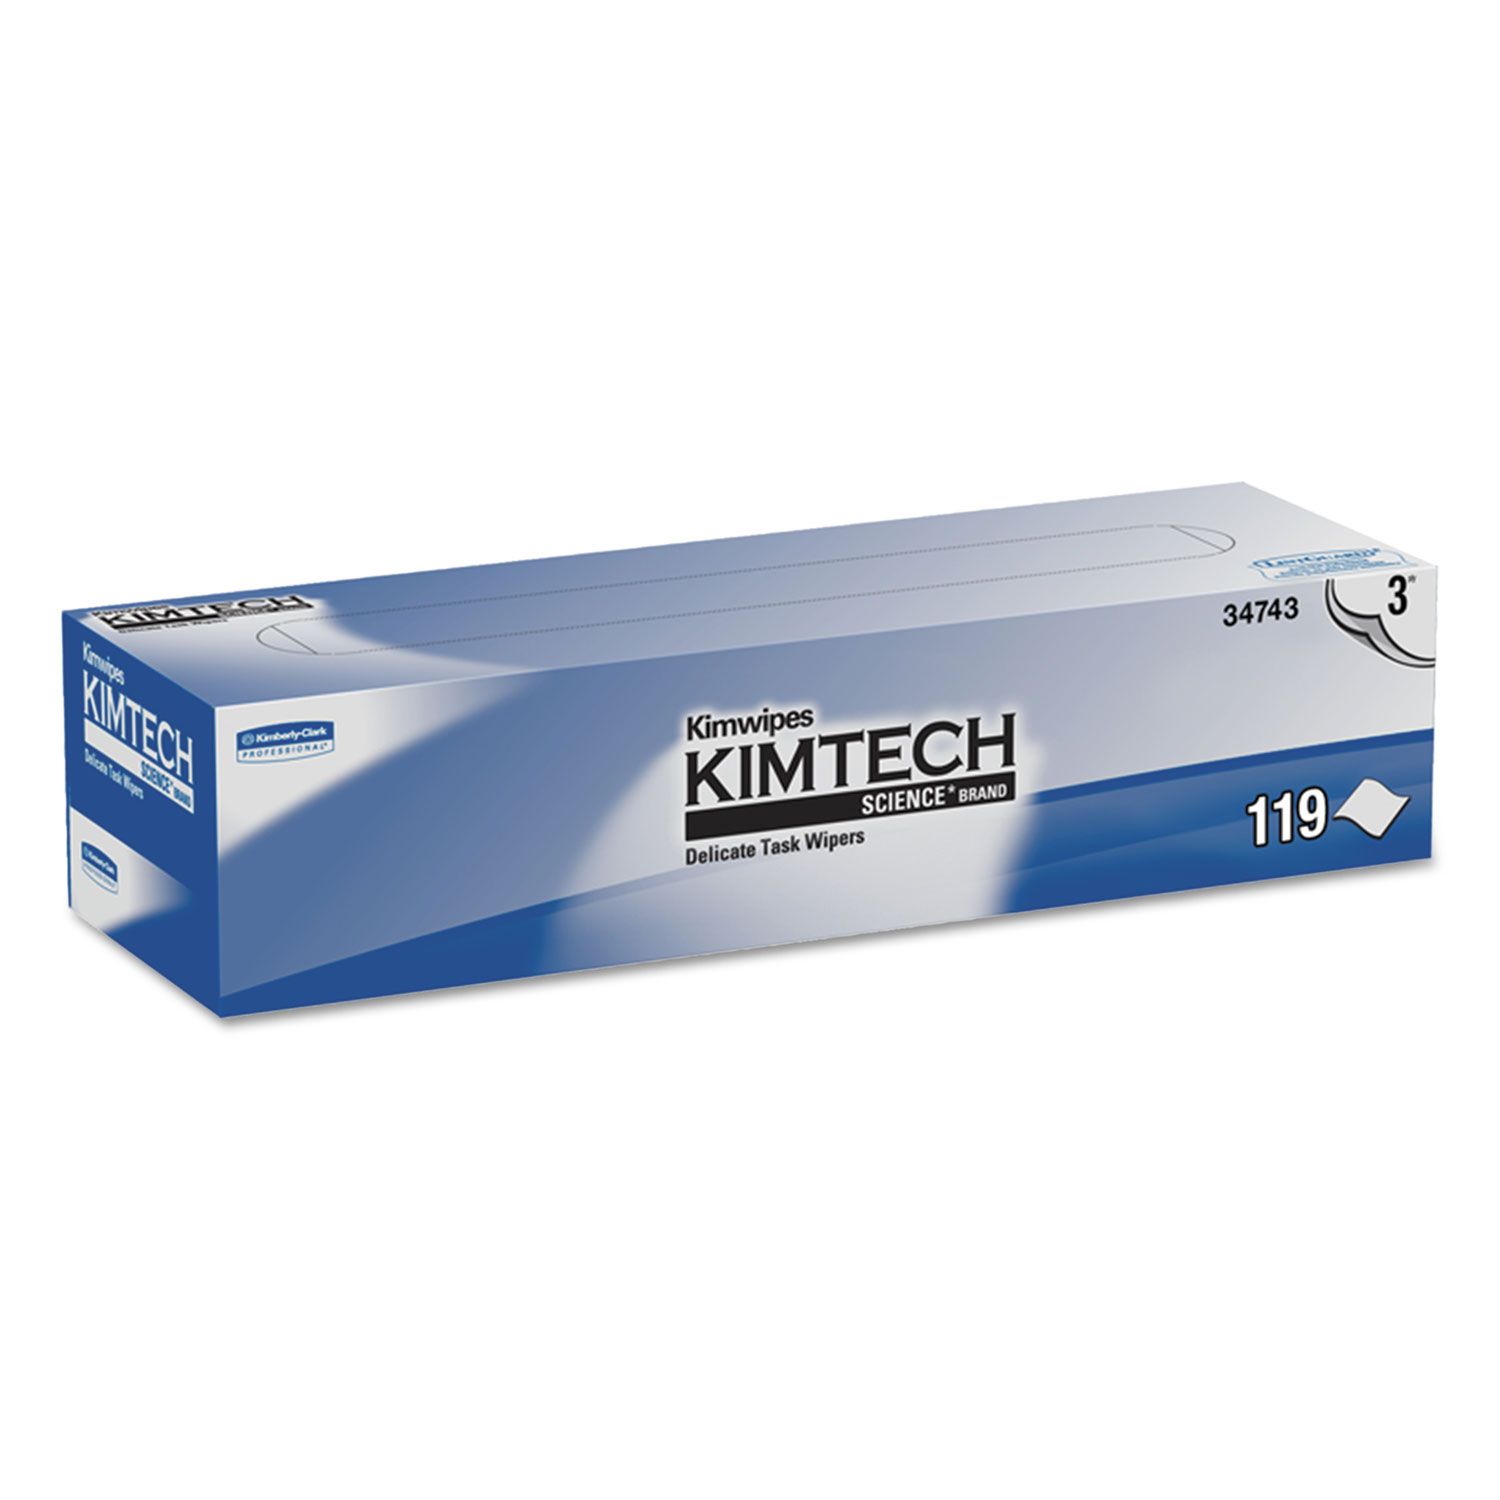  Kimtech KCC 34743 Kimwipes Delicate Task Wipers, 3-Ply, 11 4/5 x 11 4/5, 119/Box, 15 Boxes/Carton (KCC34743) 